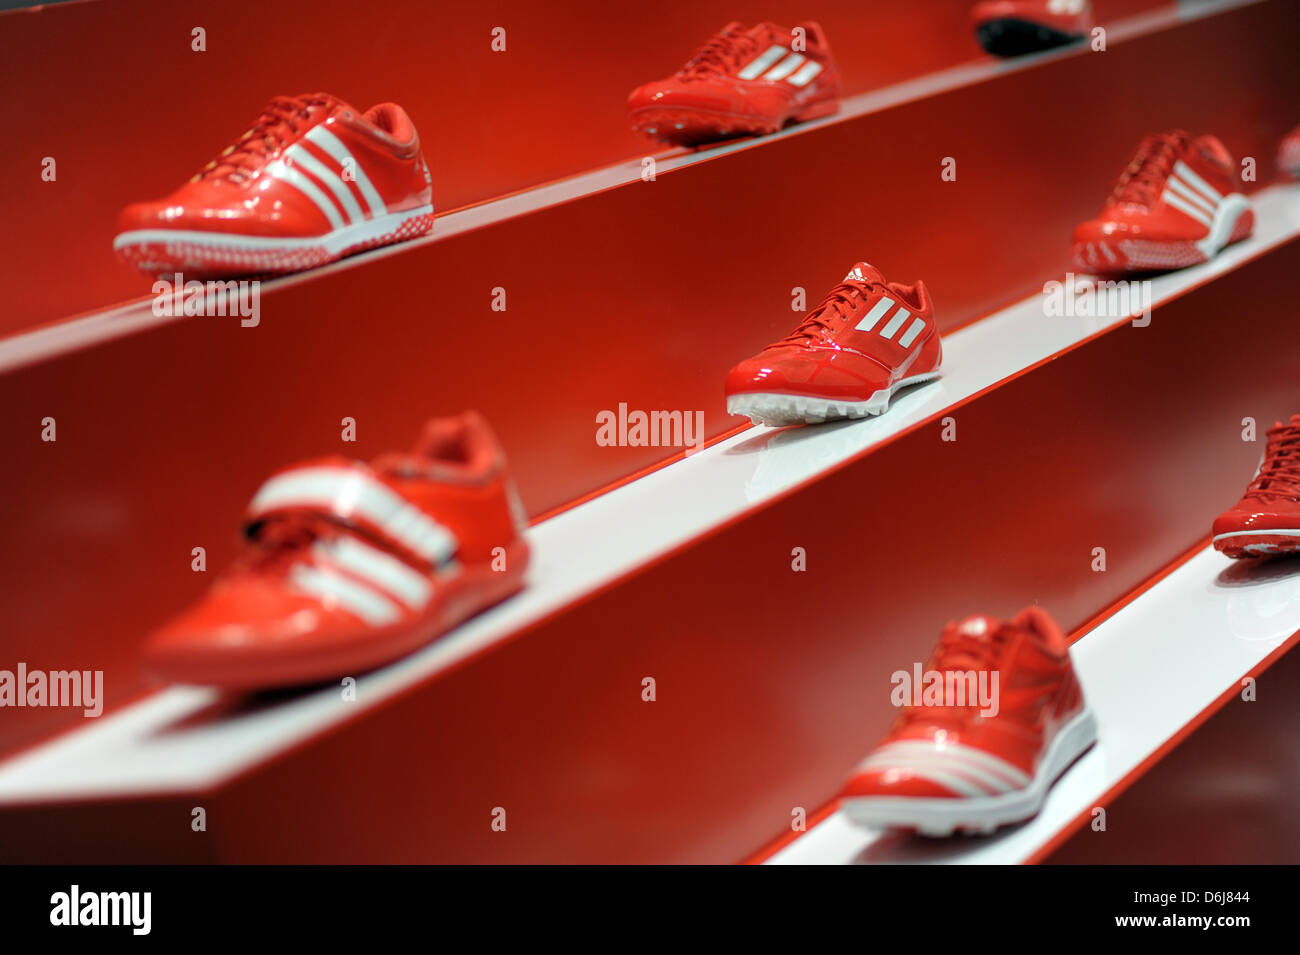 Rouge adidas chaussures de foot sont sur l'affichage lors d'une conférence  de presse sur les résultats annuels de l'entreprise à Herzogenaurach,  Allemagne, 07 mars 2012. L'entreprise d'articles de sport adidas est en